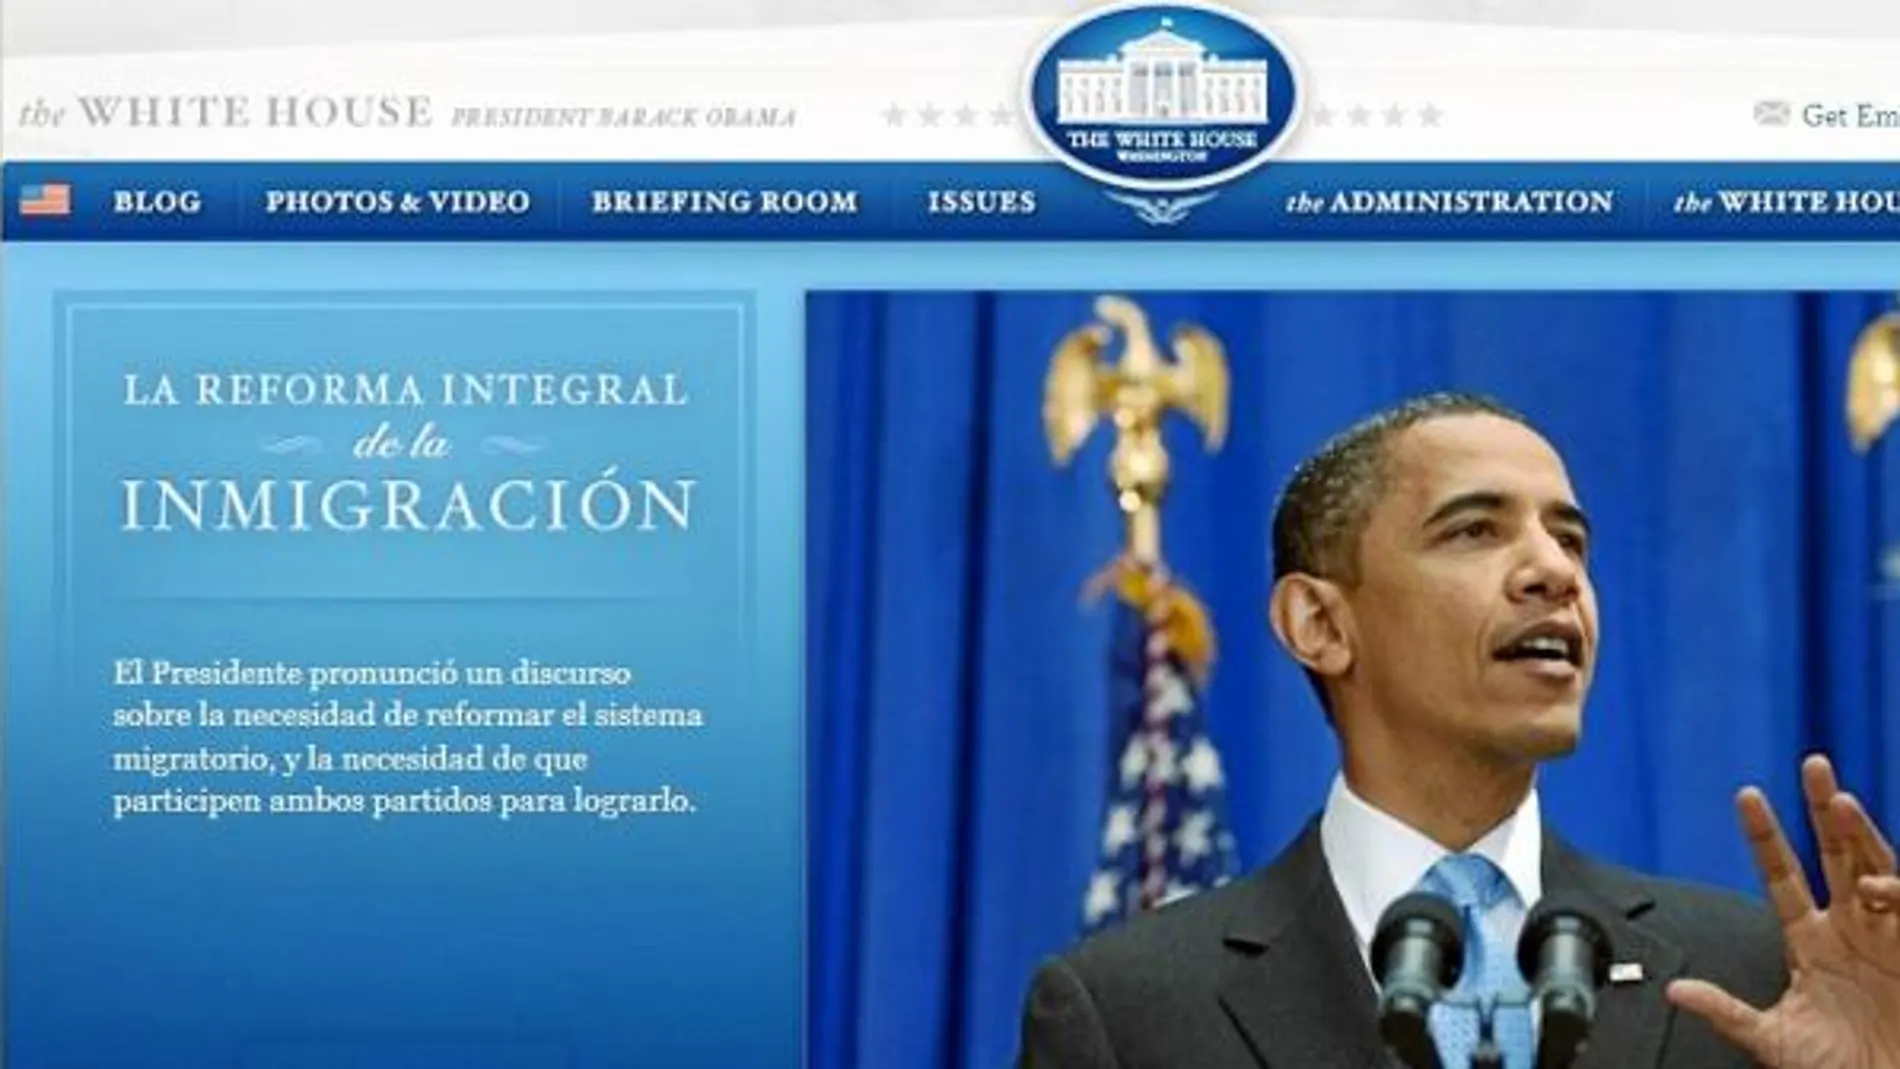 Estados Unidos aconseja, y predica con el ejemplo. La web de la Casa Blanca está disponible en inglés y español, pero no sólo eso: la agenda del presidente se envía a diario a los medios de comunicación en ambos idiomas.